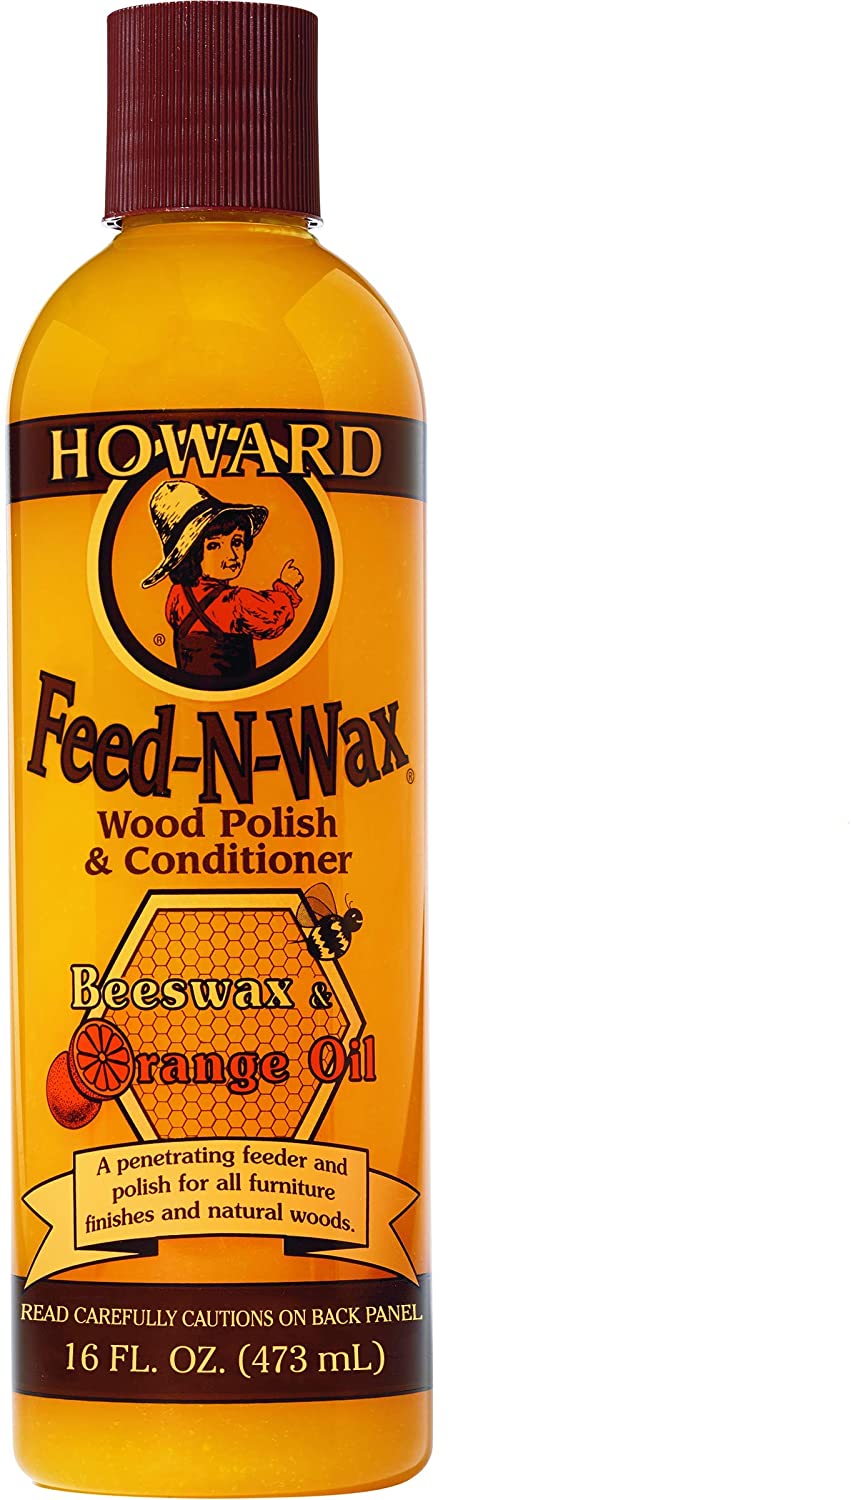 Howard 16 oz. Feed-N-Wax Wood Polish